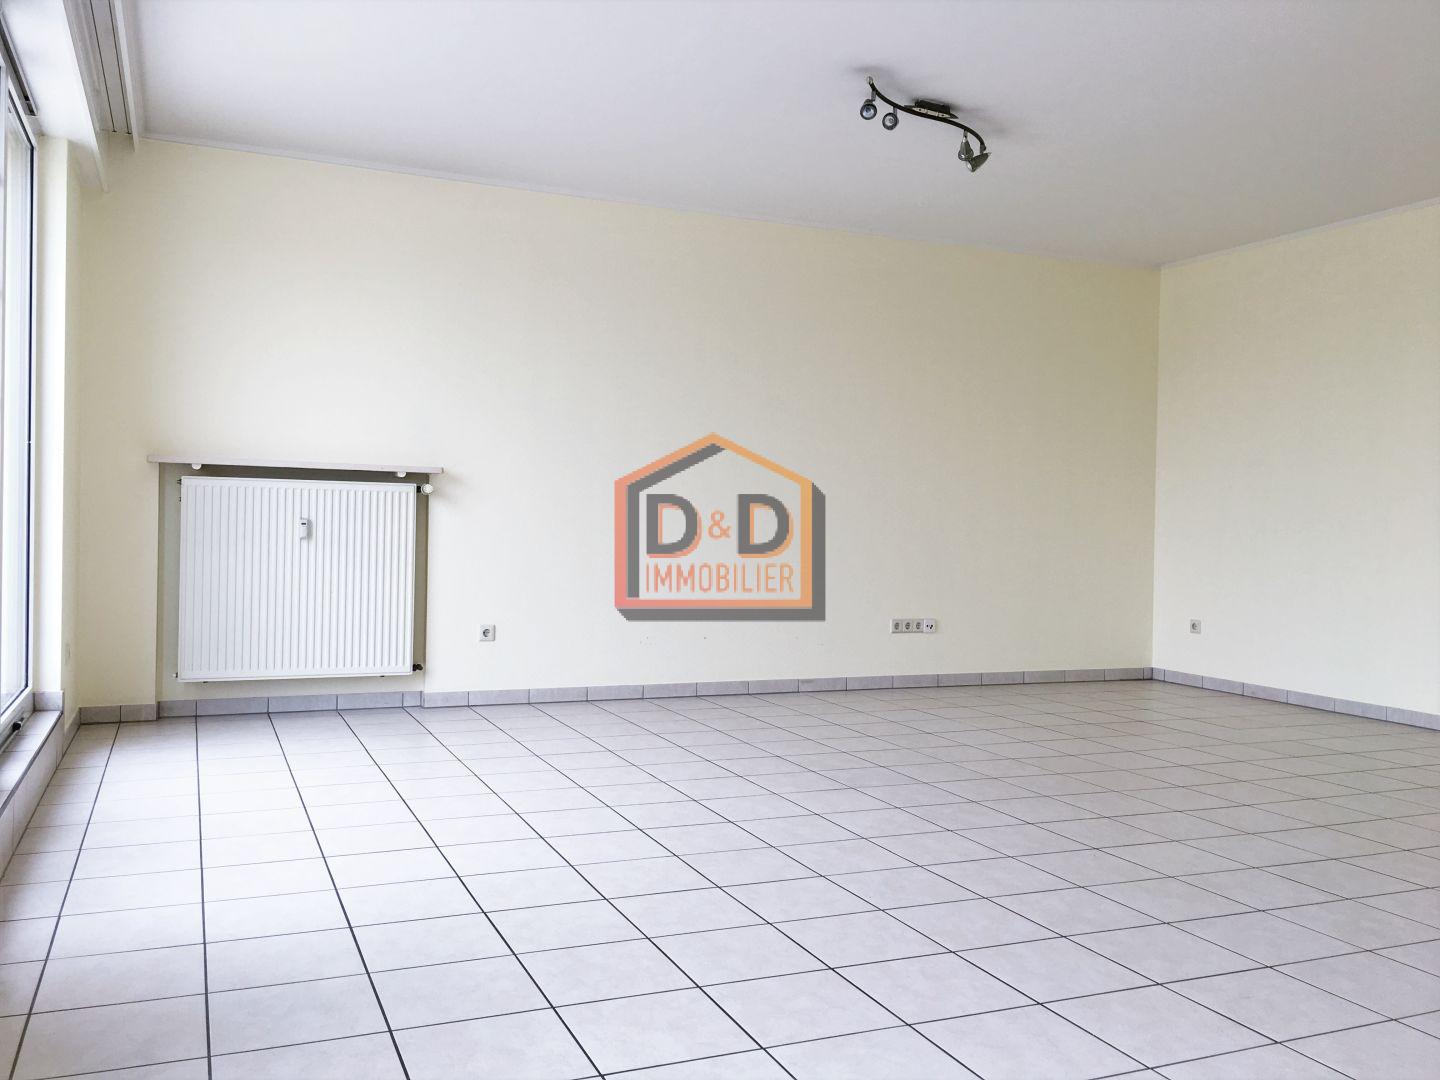 Appartement à Luxembourg-Limpertsberg, 114 m², 2 chambres, 2 salles de bain, 1 garage, 2 200 €/mois